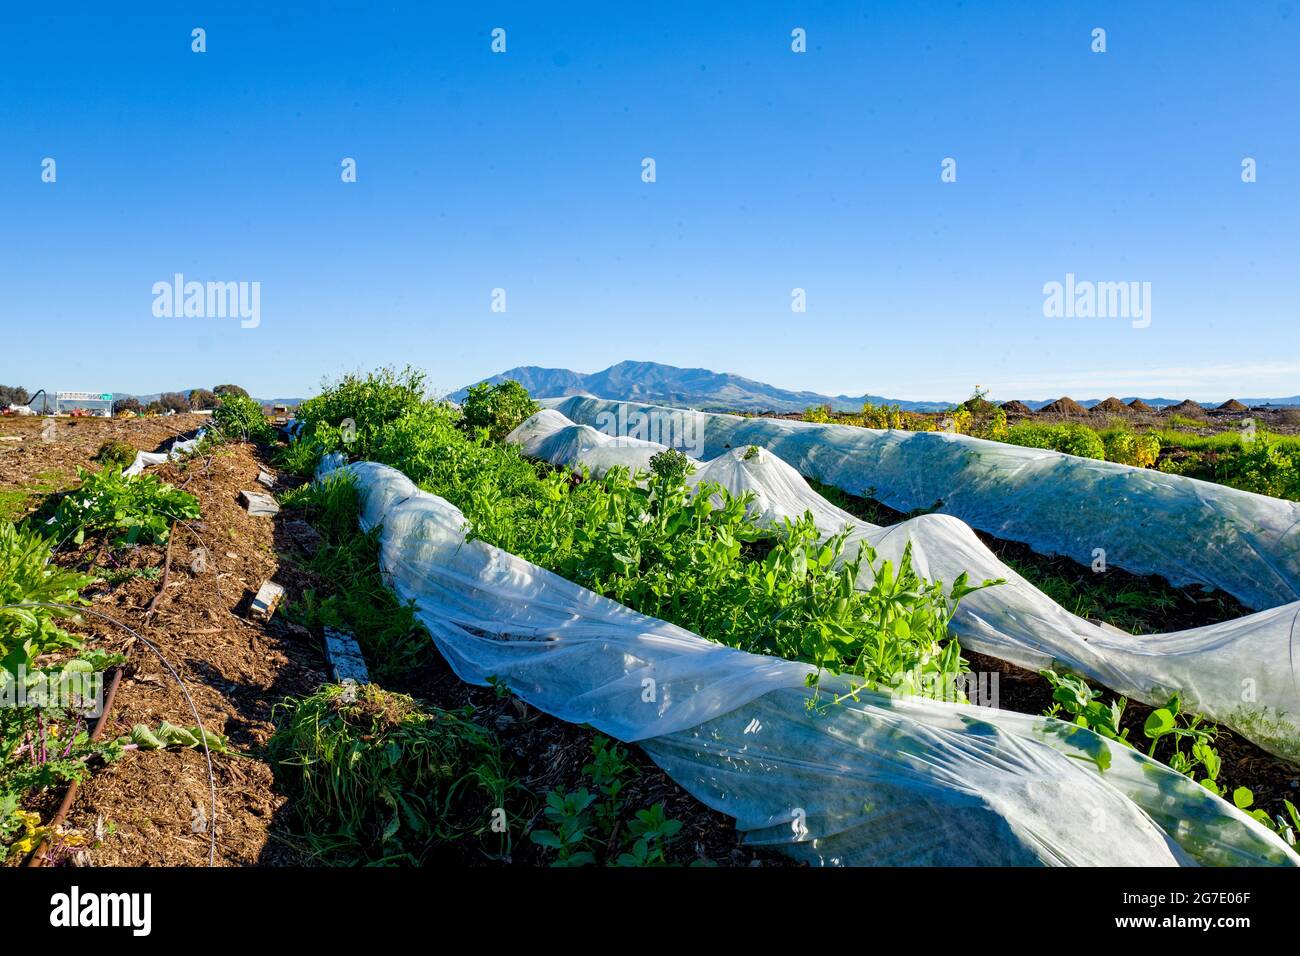 Des plantes et du matériel sont visibles à Coco San Sustainable Farm, une ferme expérimentale qui utilise de l'eau recyclée pour cultiver des plantes pour les écoles locales de Martinez, Californie, le 24 janvier 2019. () Banque D'Images